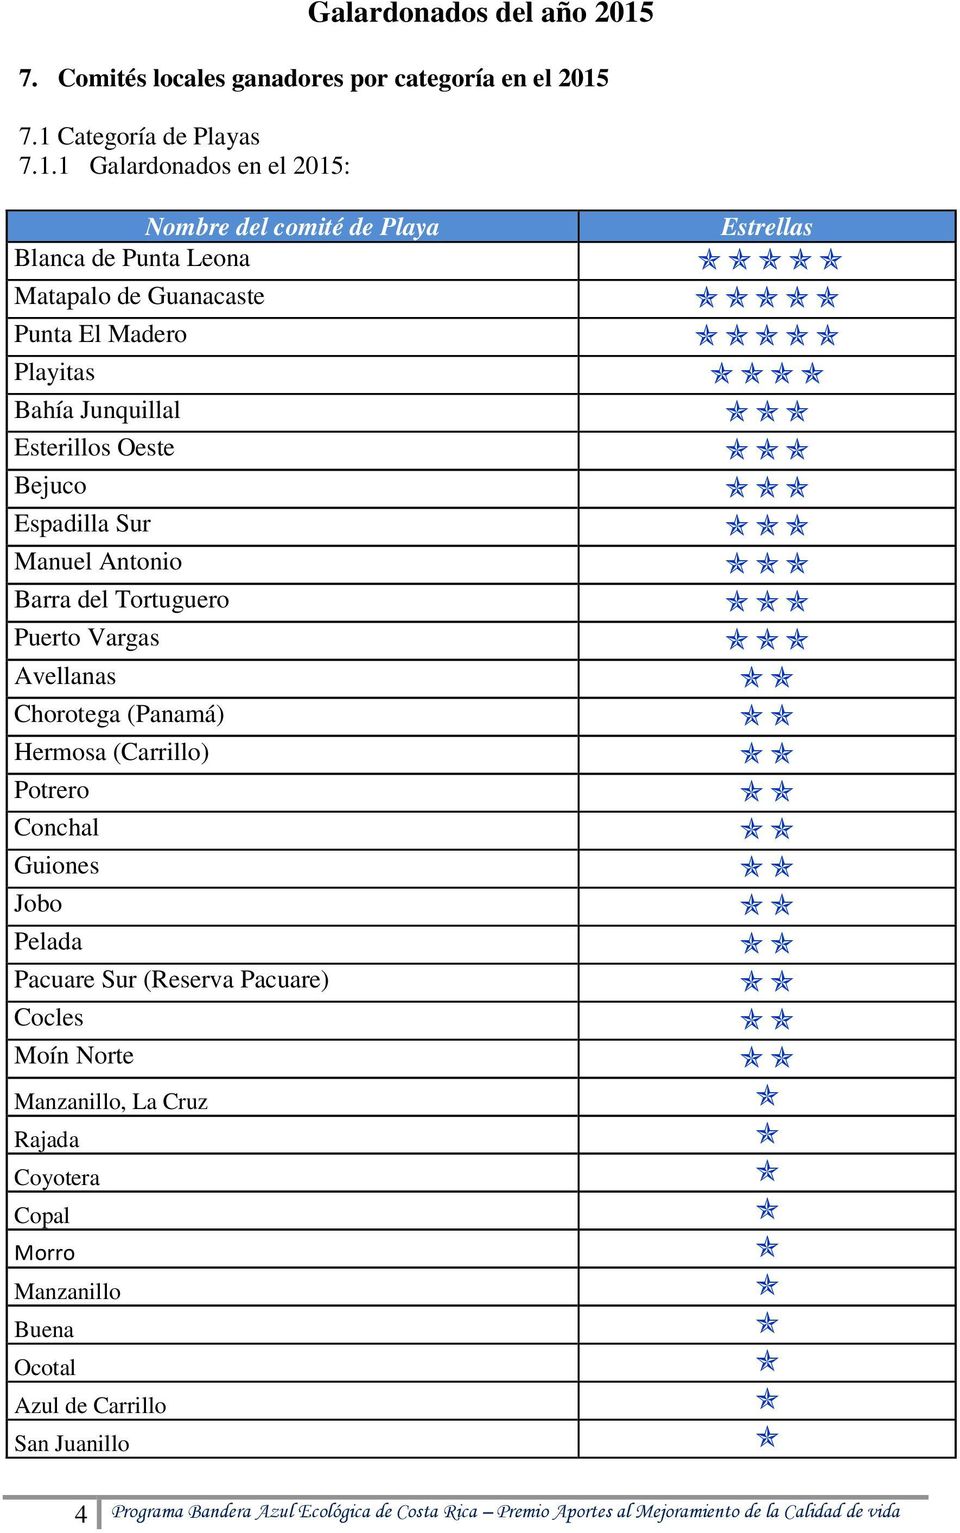 7.1 Categoría de Playas 7.1.1 Galardonados en el 2015: Nombre del comité de Playa Blanca de Punta Leona Matapalo de Guanacaste Punta El Madero Playitas Bahía Junquillal